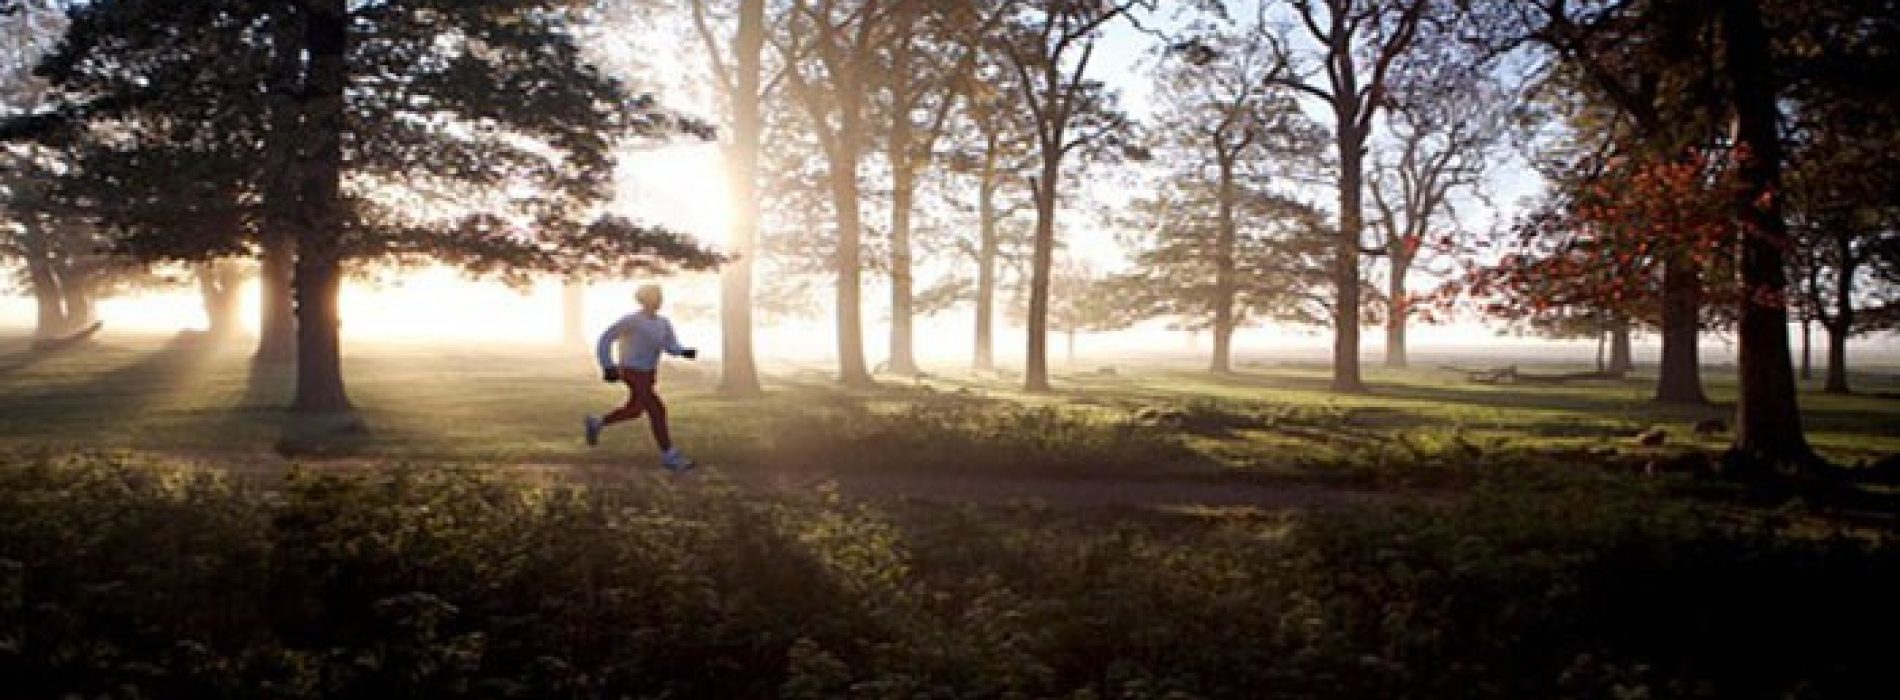 Aërobic oefeningen zoals hardlopen verhogen de aanmaak van zenuwcellen in de hersenen van volwassenen